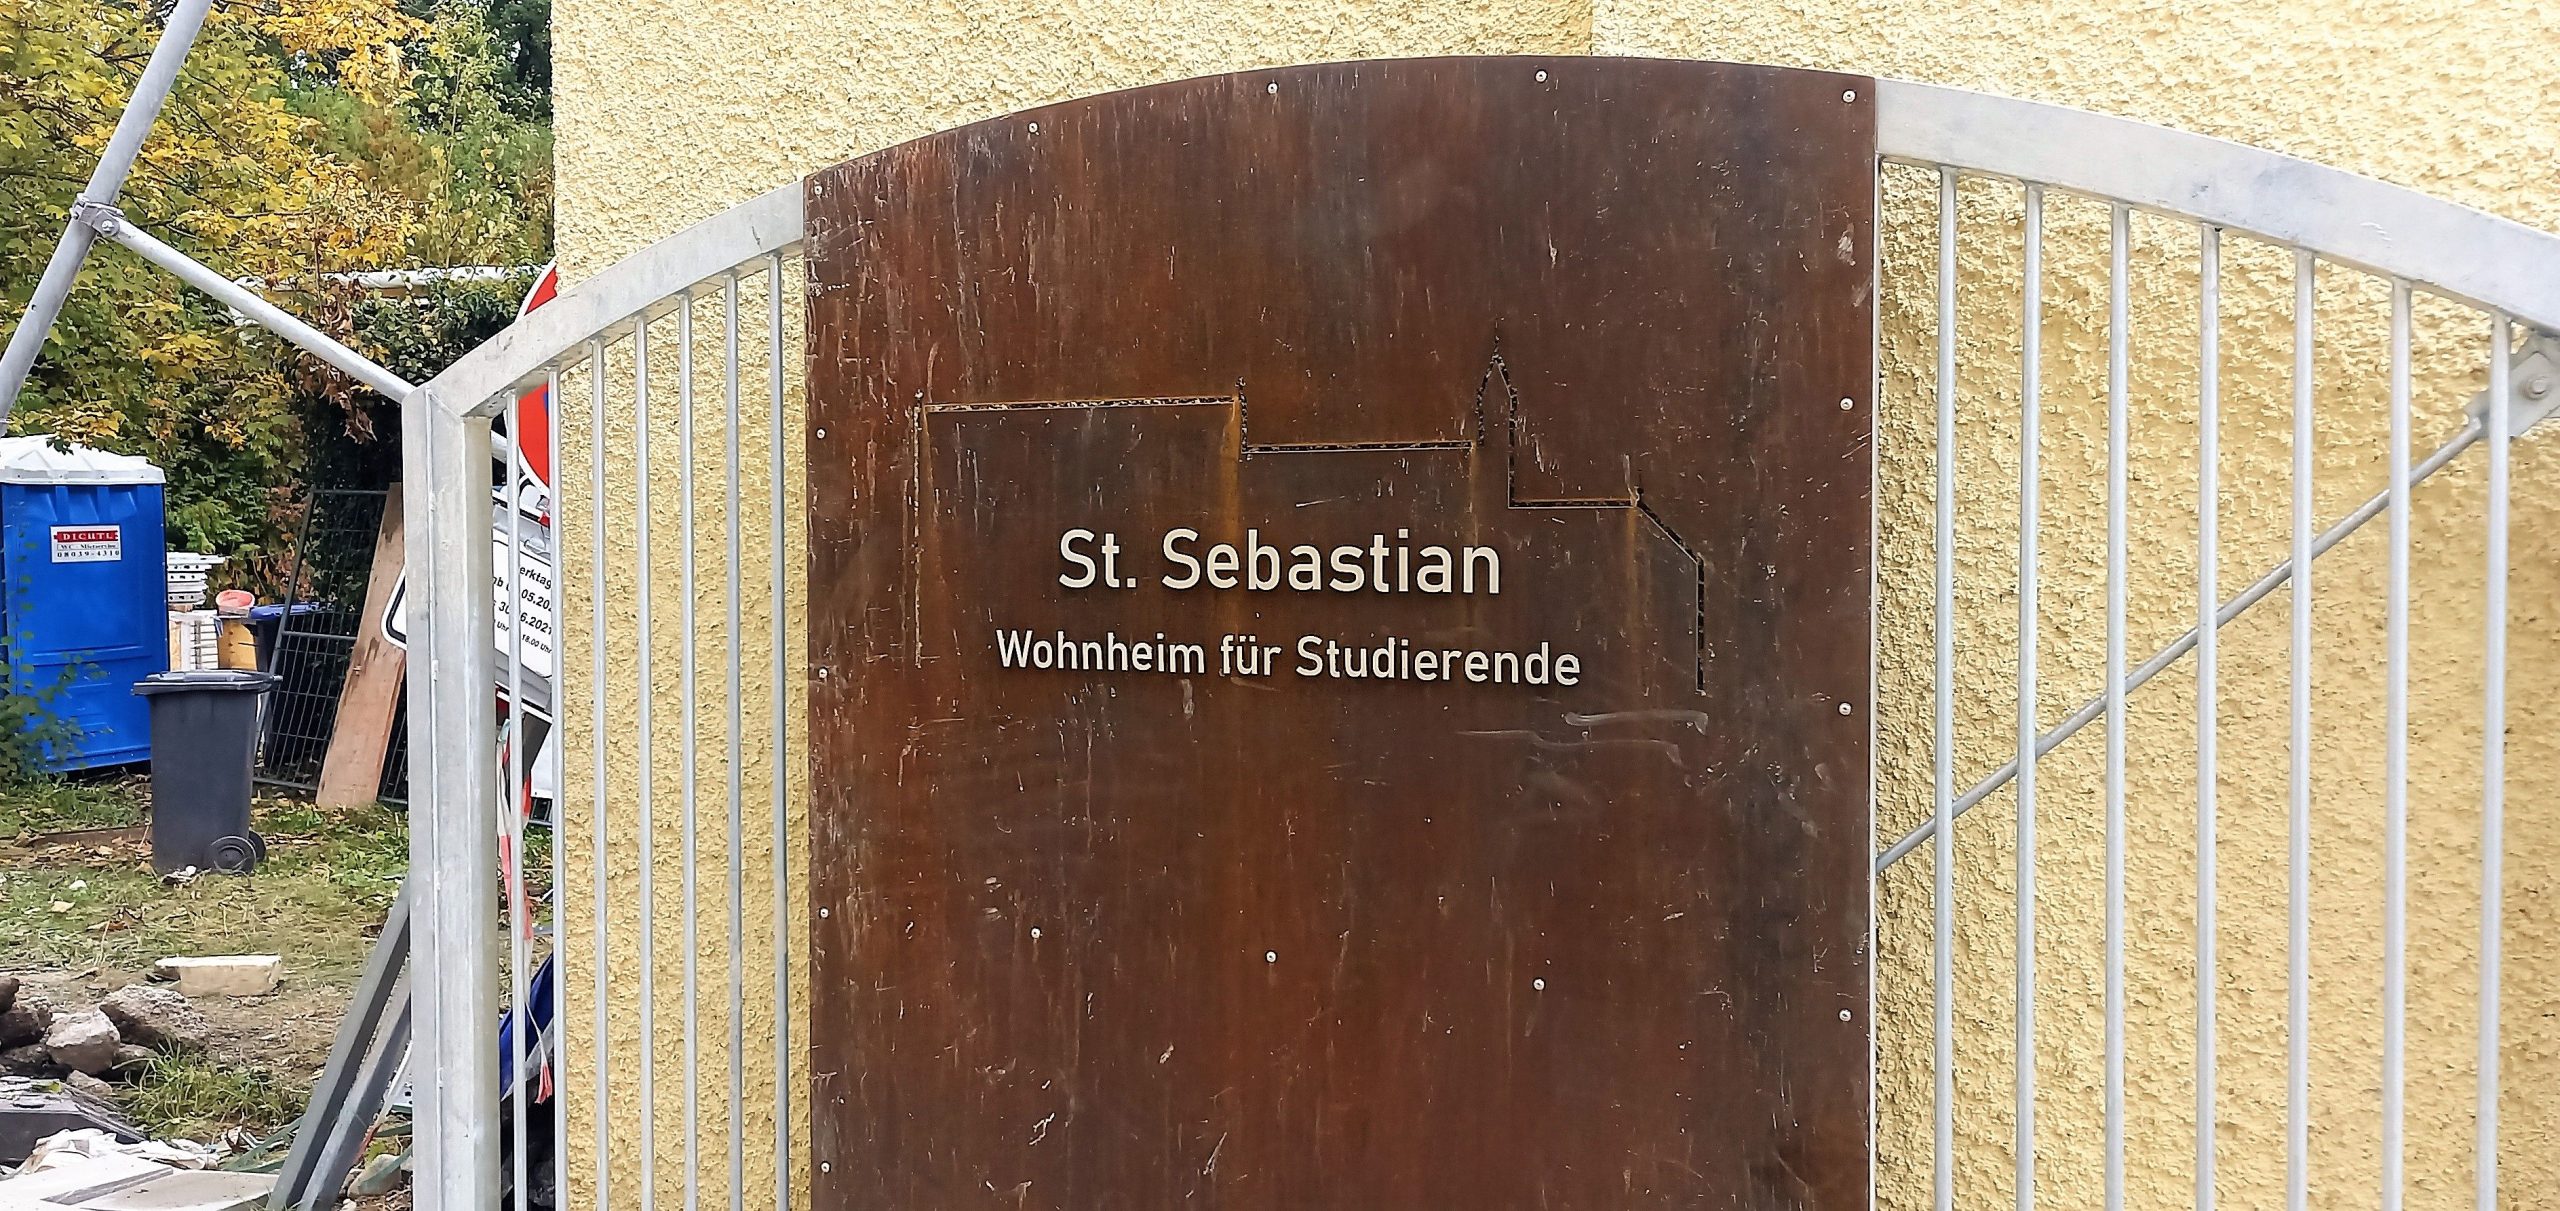 Eingangstüre zum Wohnheim St. Sebastian